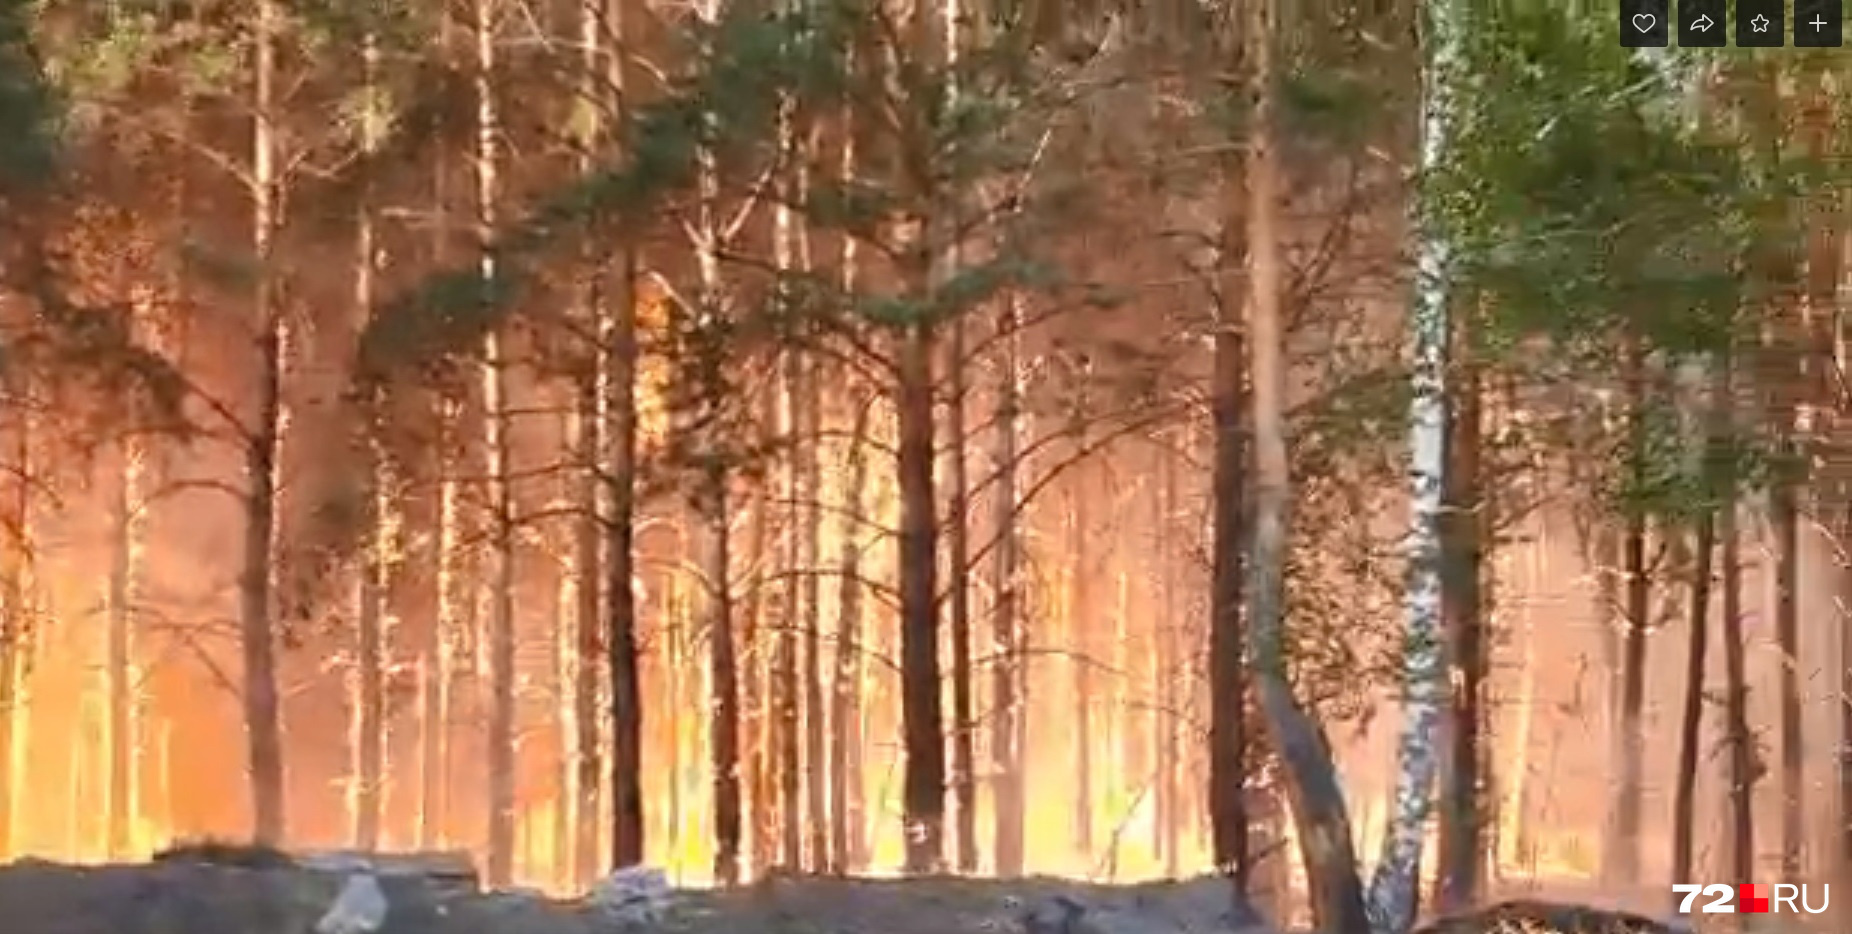 Пожар охватил лес, и затем были зафиксированы серьезные пожары частных домов